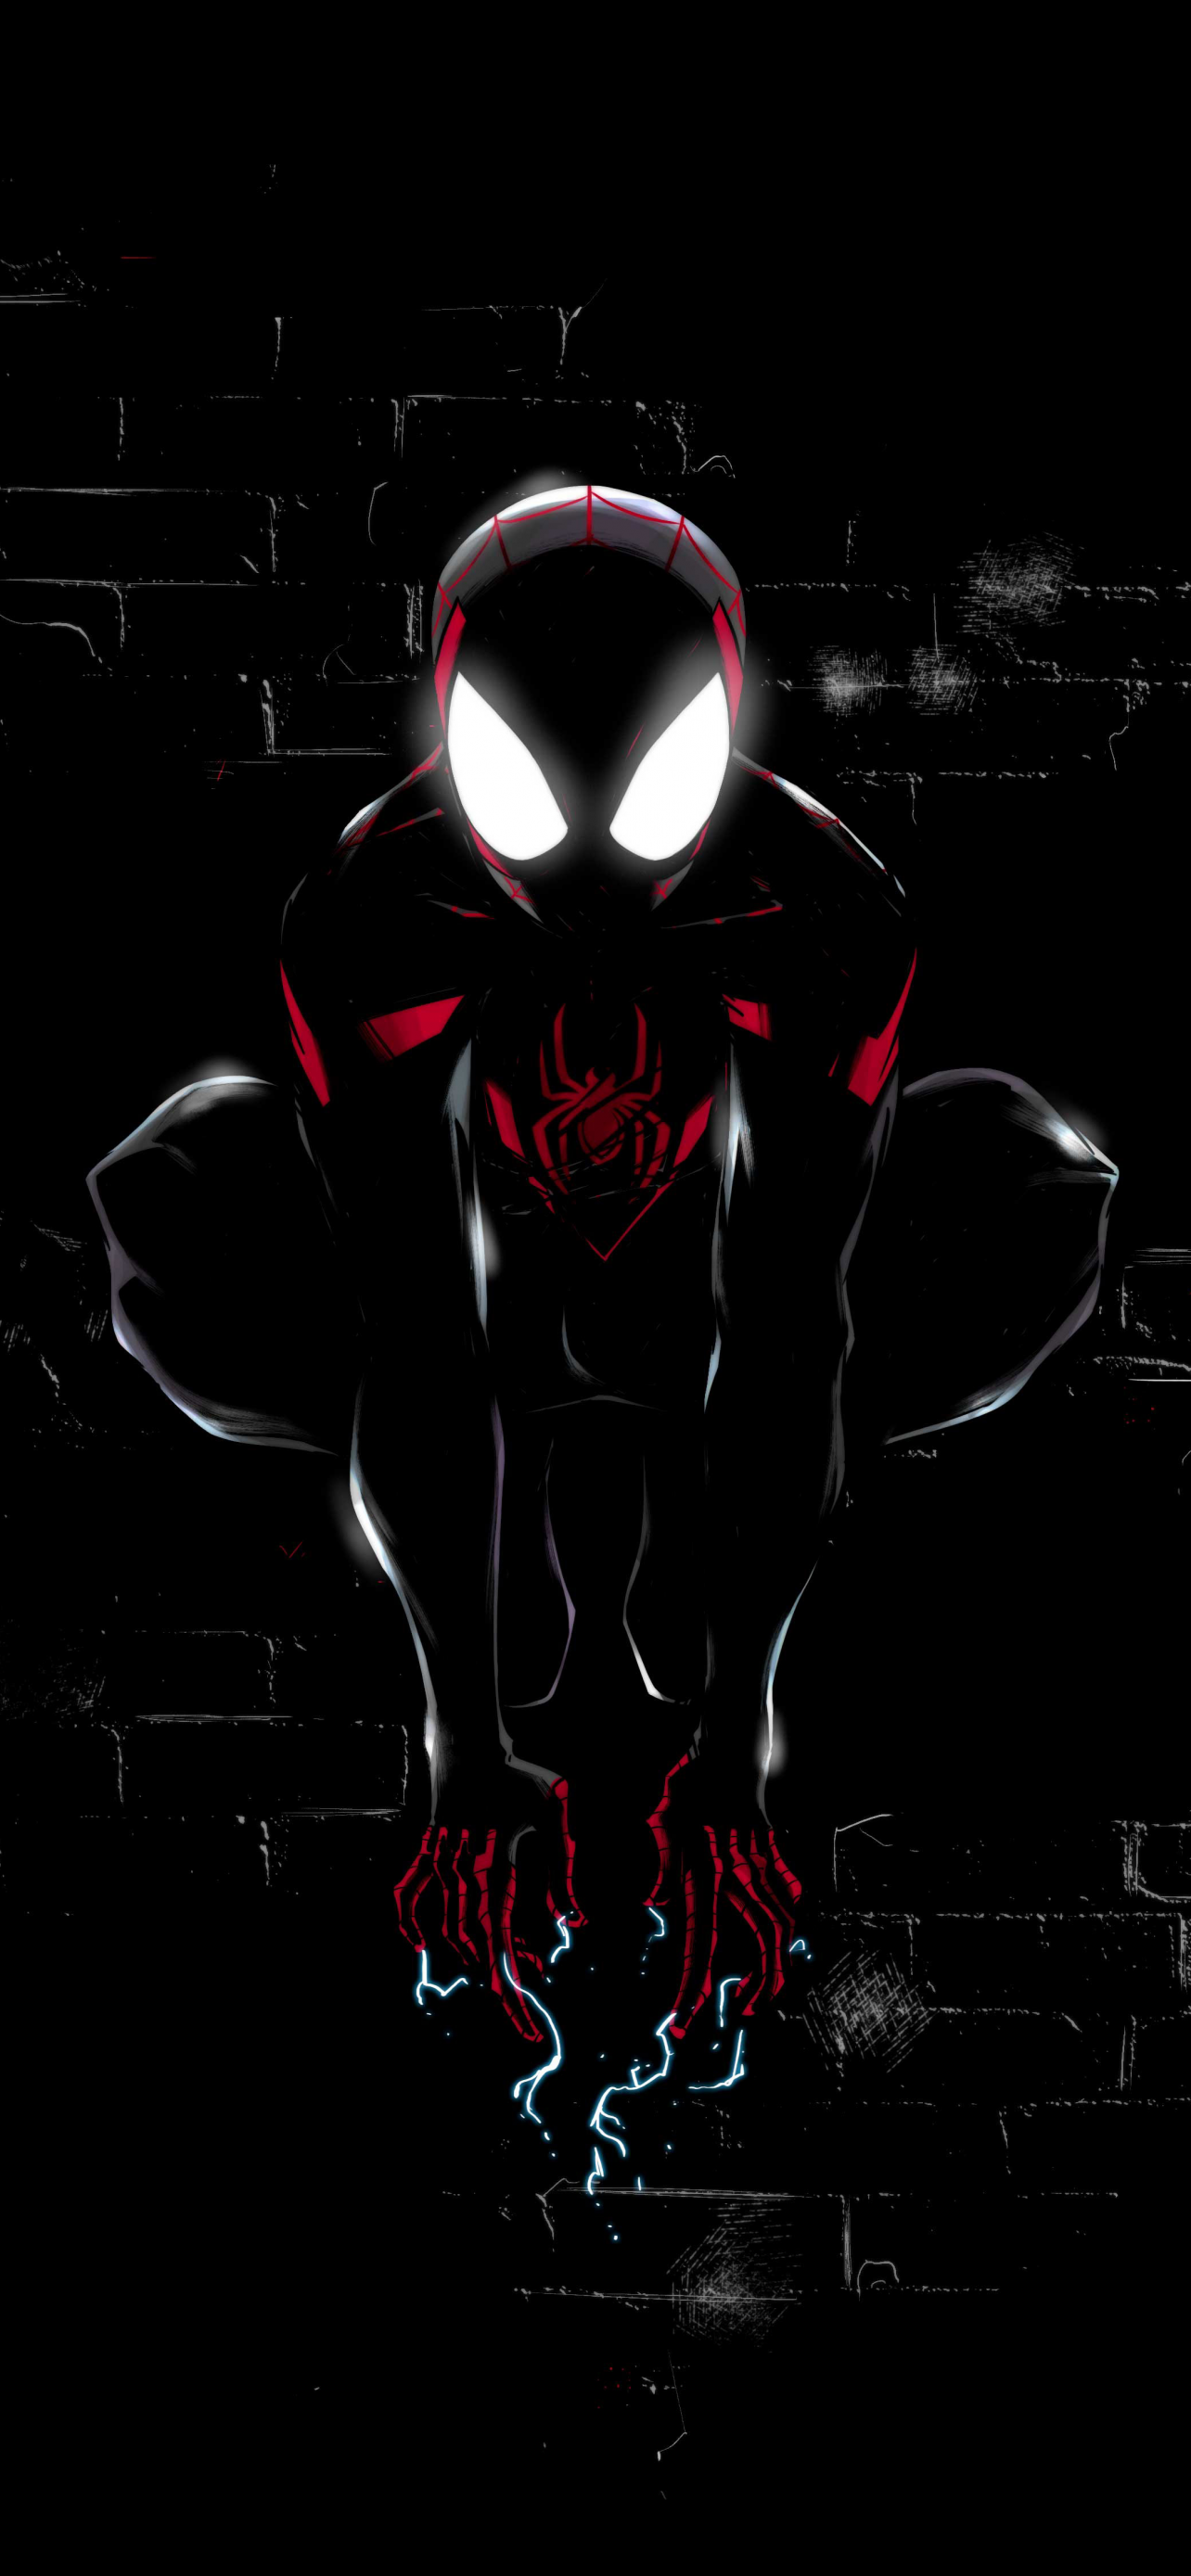 Spider-Man: Hãy cùng khám phá hành trình phiêu lưu của Spider-Man và theo dõi những pha hành động đầy kịch tính của anh chàng siêu anh hùng này trong hình ảnh đầy màu sắc và hấp dẫn.